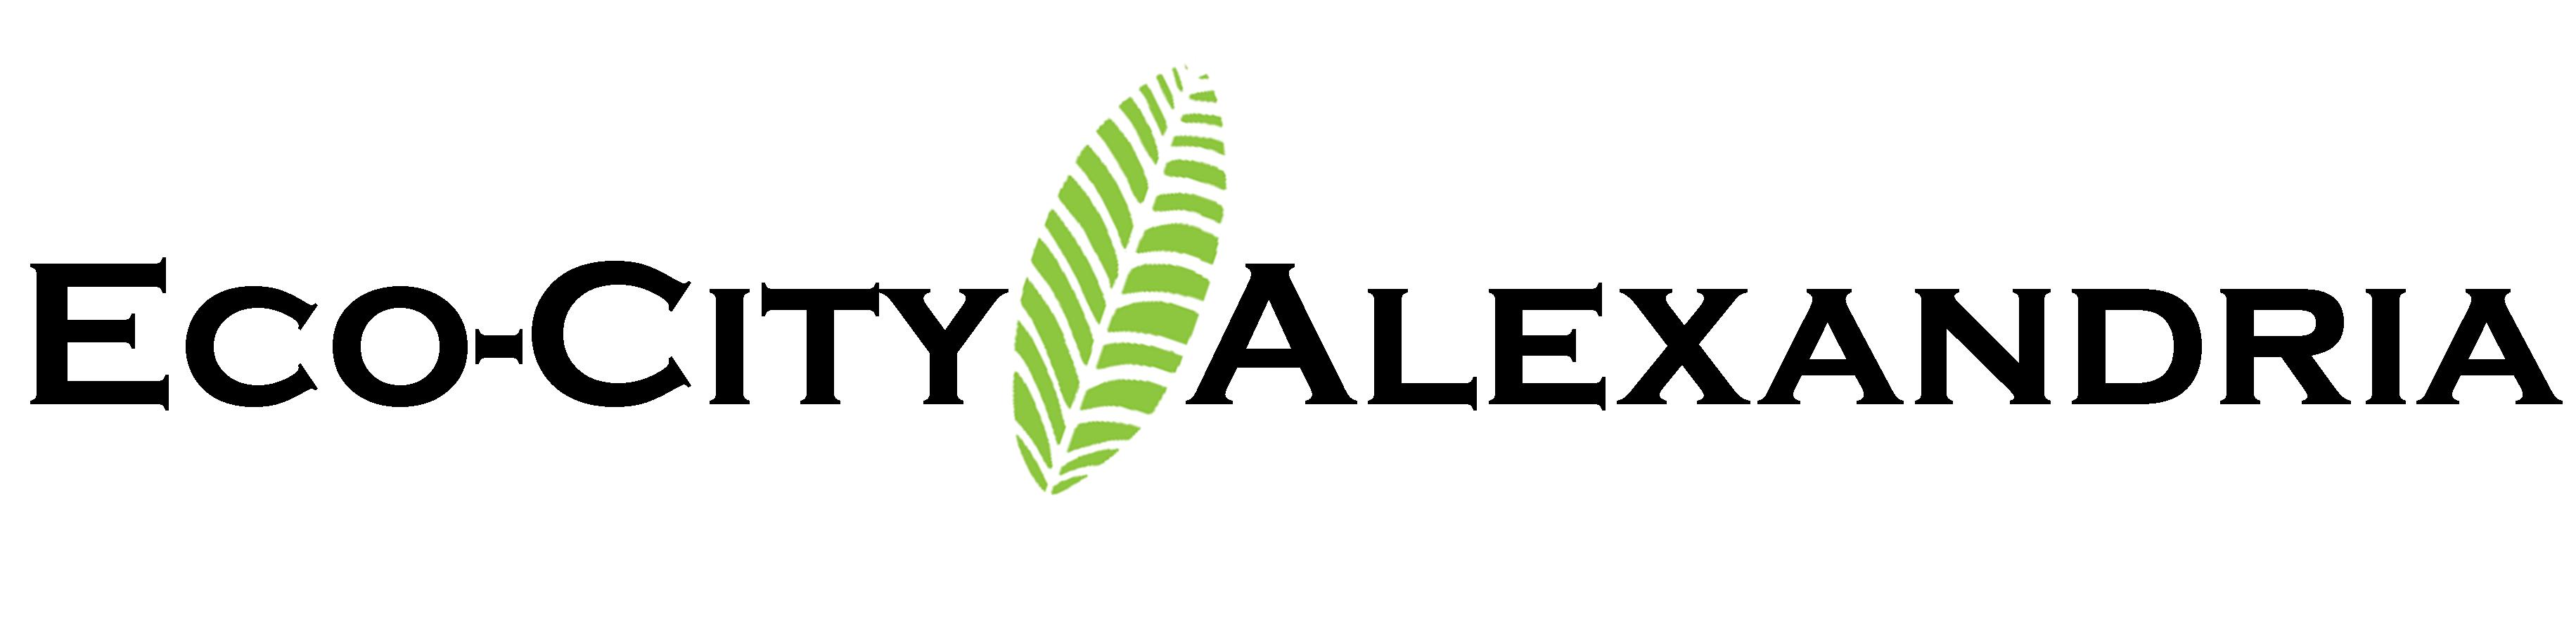 Logo reading "Eco-City Alexandria" with a stylized leaf